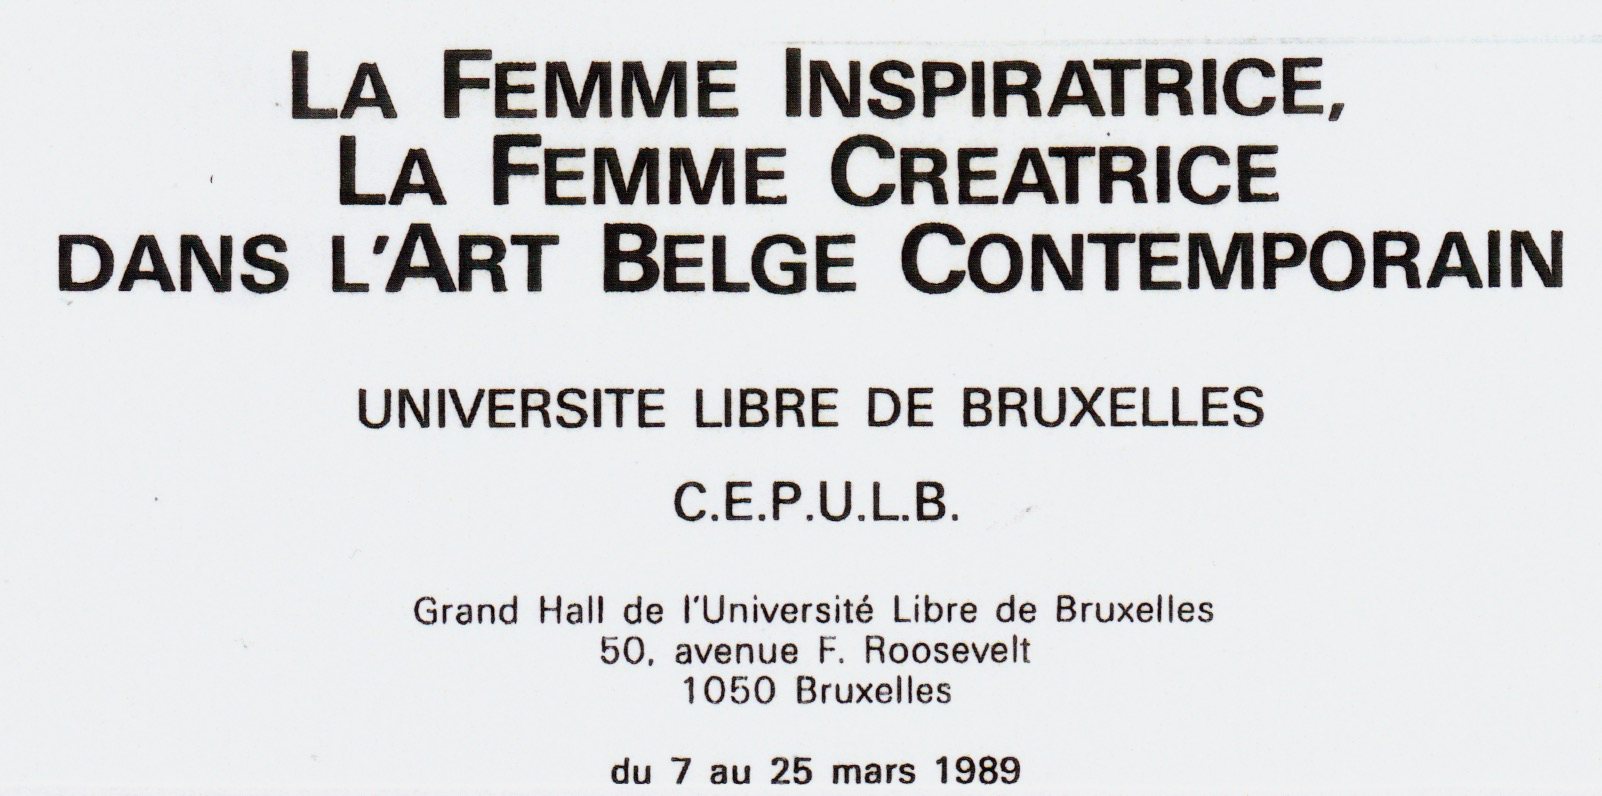 La Femme inspiratrice, la femme créatrice dans l'Art belge contemporain, université libre de bruxelles, 1989